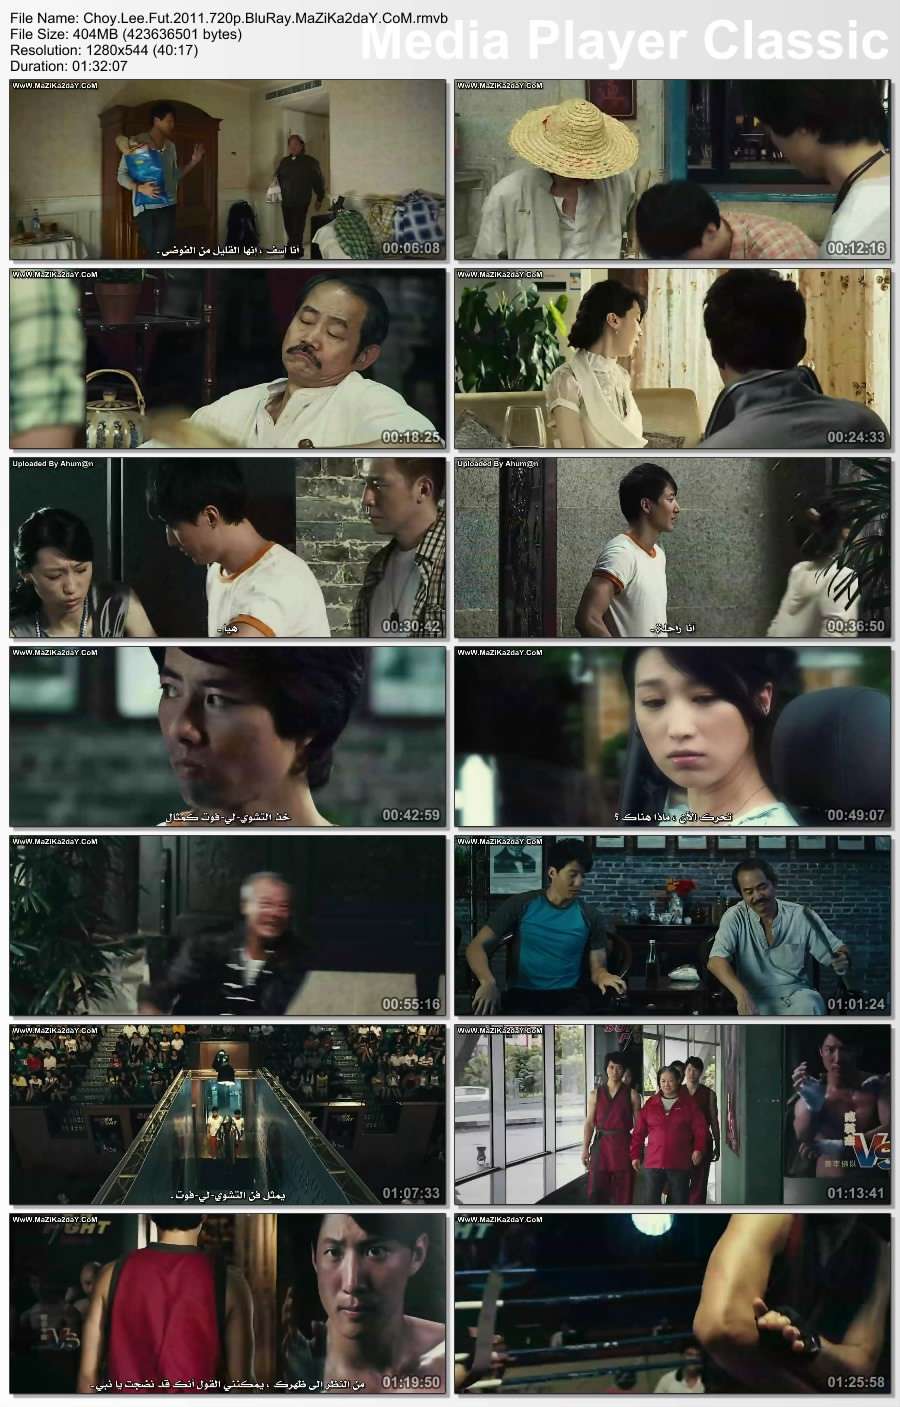 حصرياً فيلم الأكشن والإثارة الرهيب Choy Lee Fut 2011 مترجم بجودة 720p BluRay تحميل مباشر Thumbs14